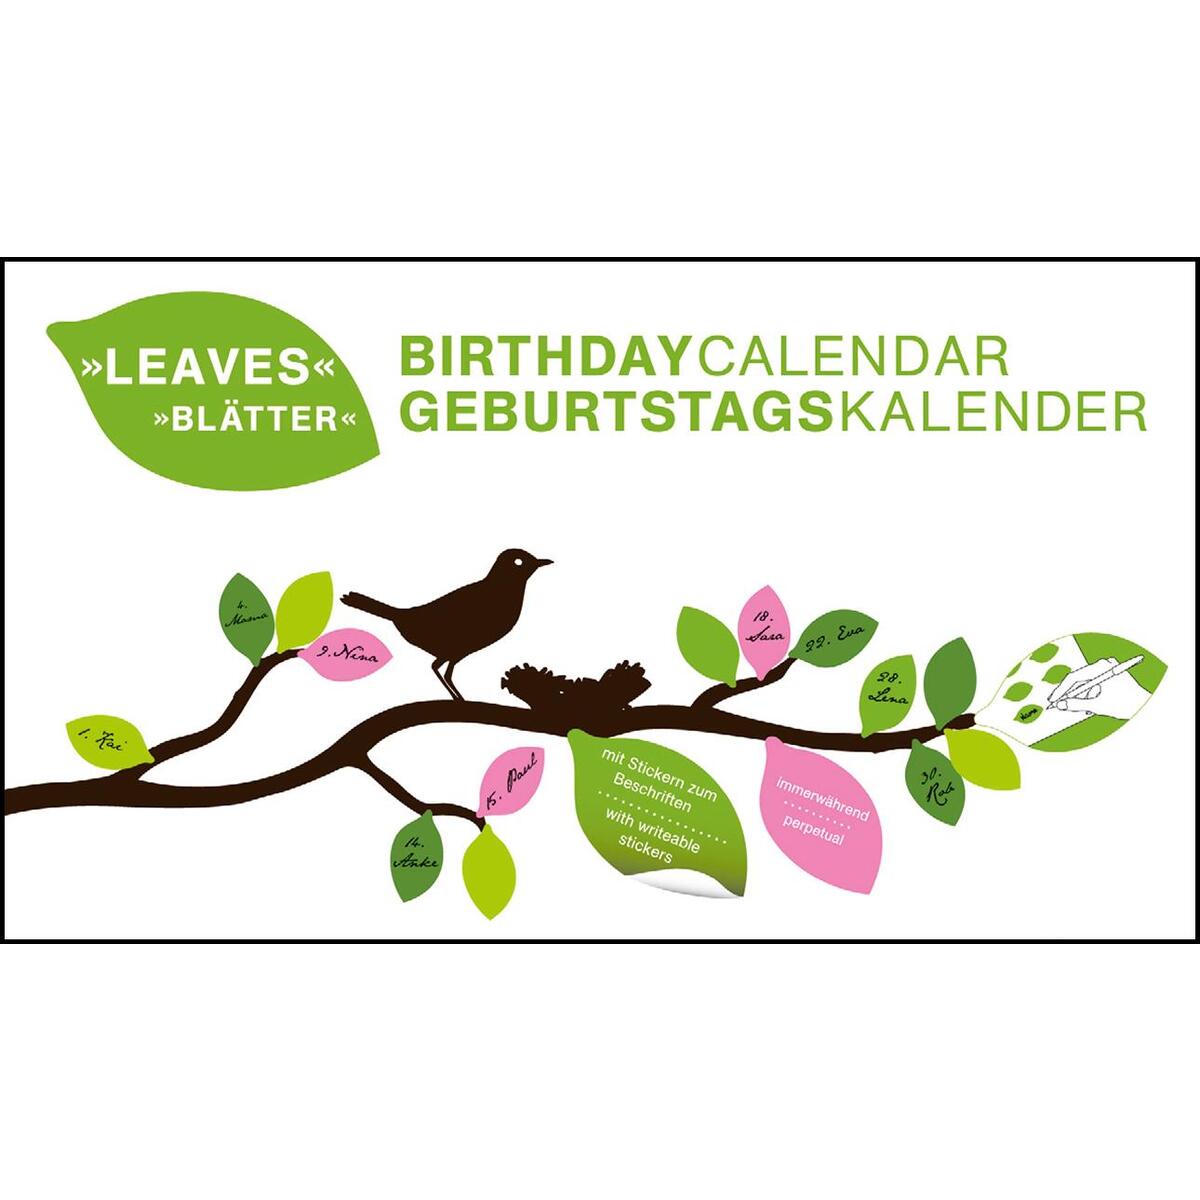 Blätter immerwährender Geburtagskalender von teNeues Calendar & Statio